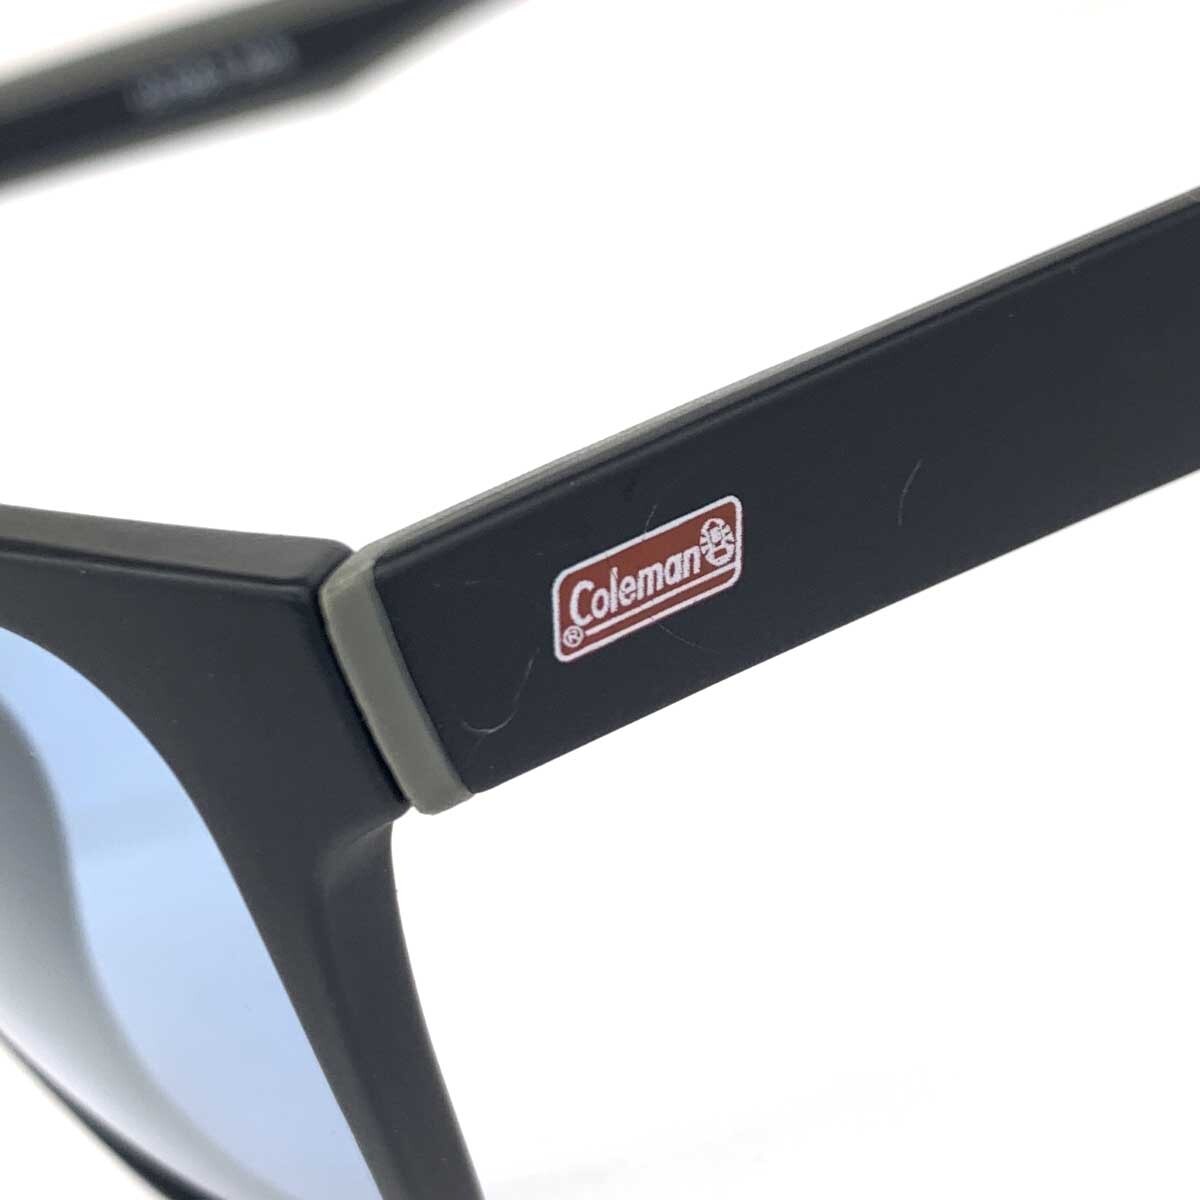  excellent *Coleman Coleman sunglasses *CLT08-3 black × blue unisex 50% sunglasses clothing accessories 